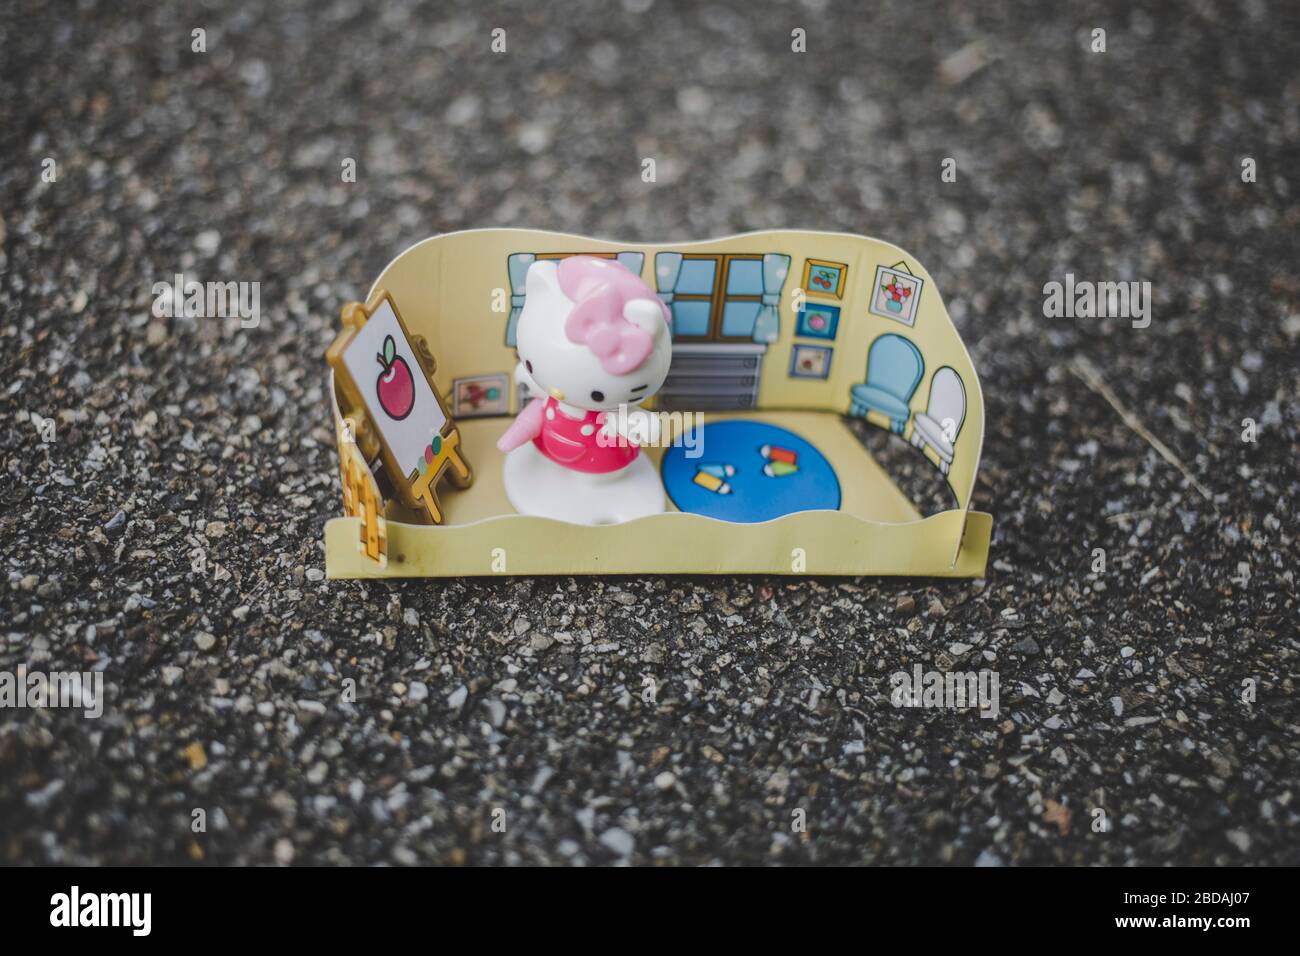 Kšln, 24.07.19: Hello Kitty Minifigur. Stock Photo